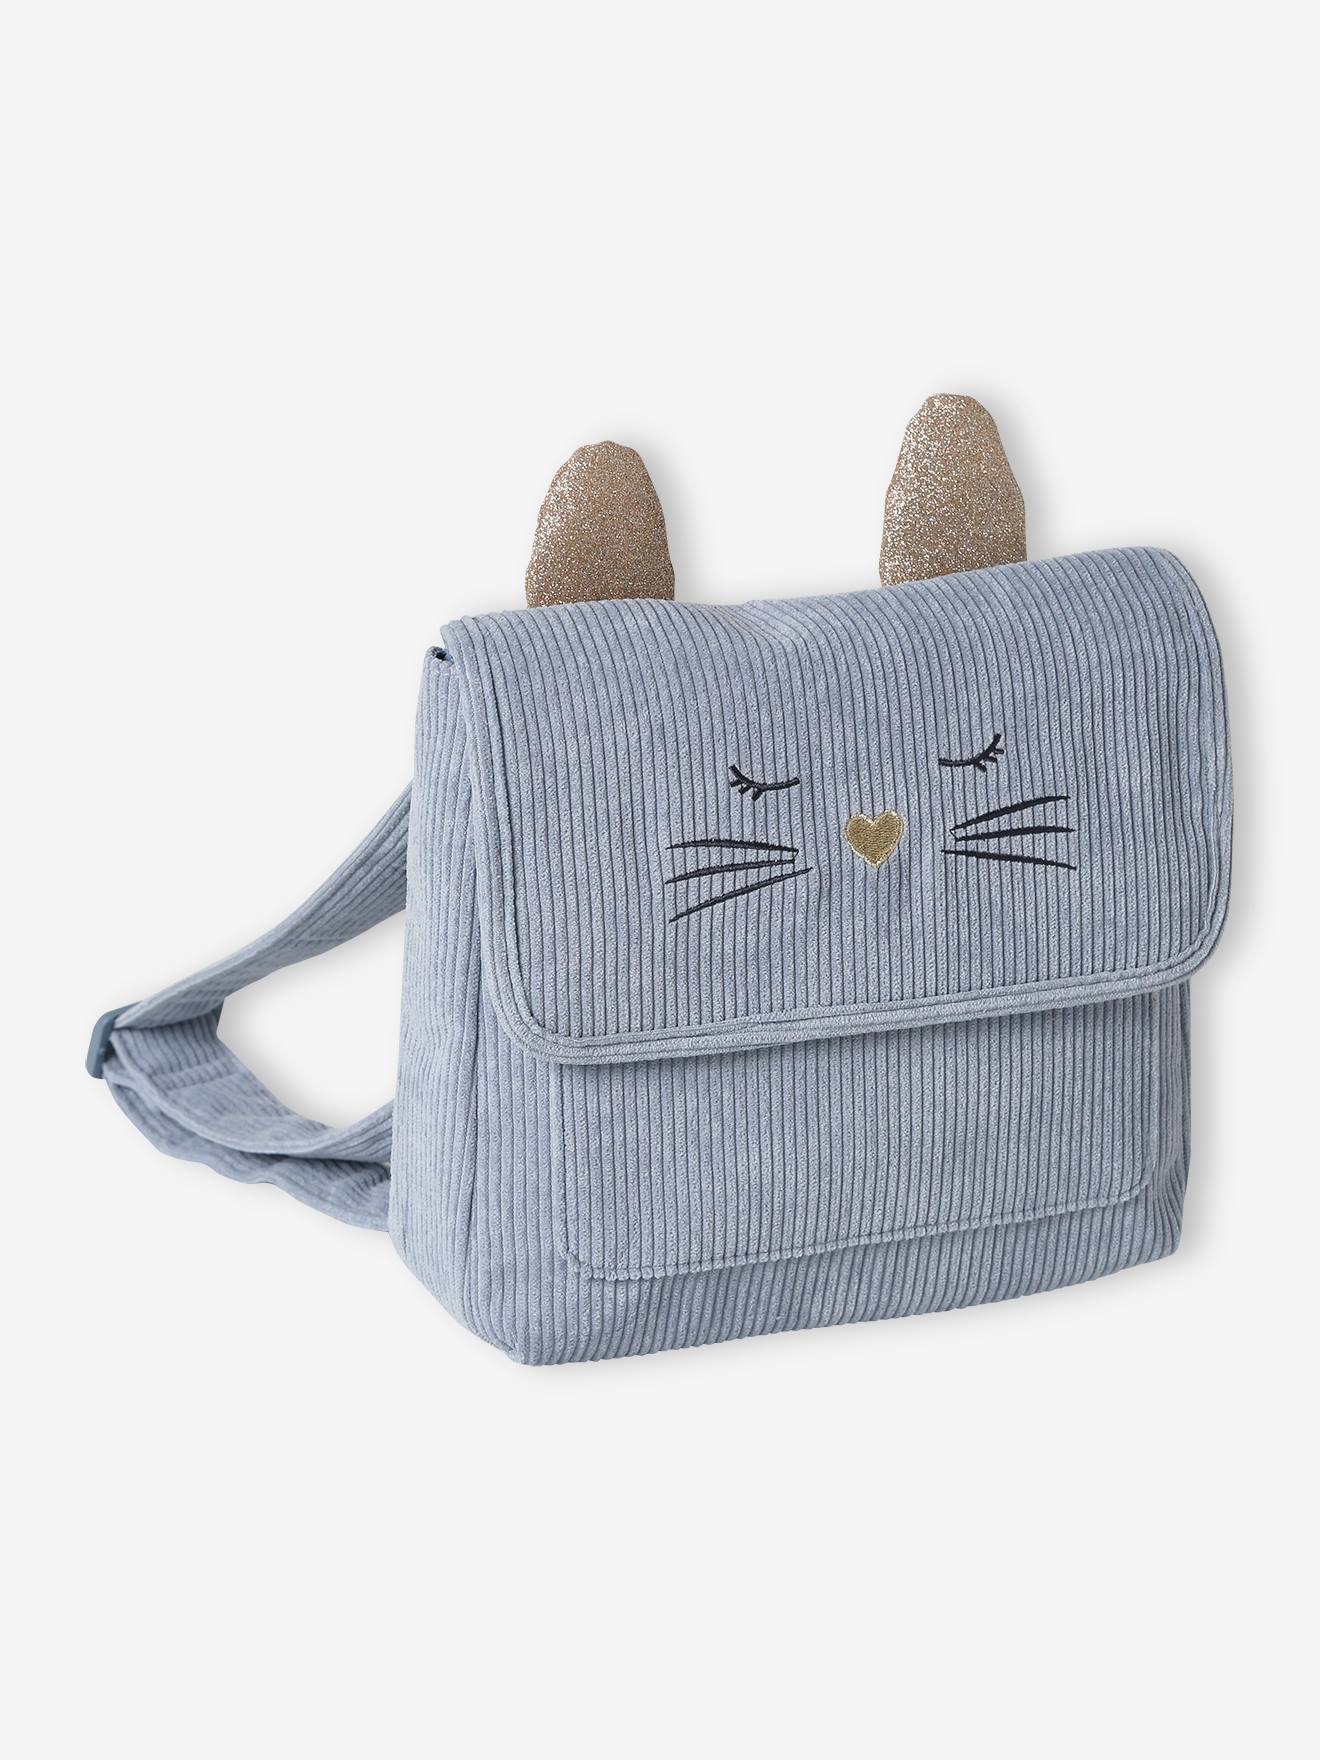 Cartable maternelle chat en velours enfant bleu grisé